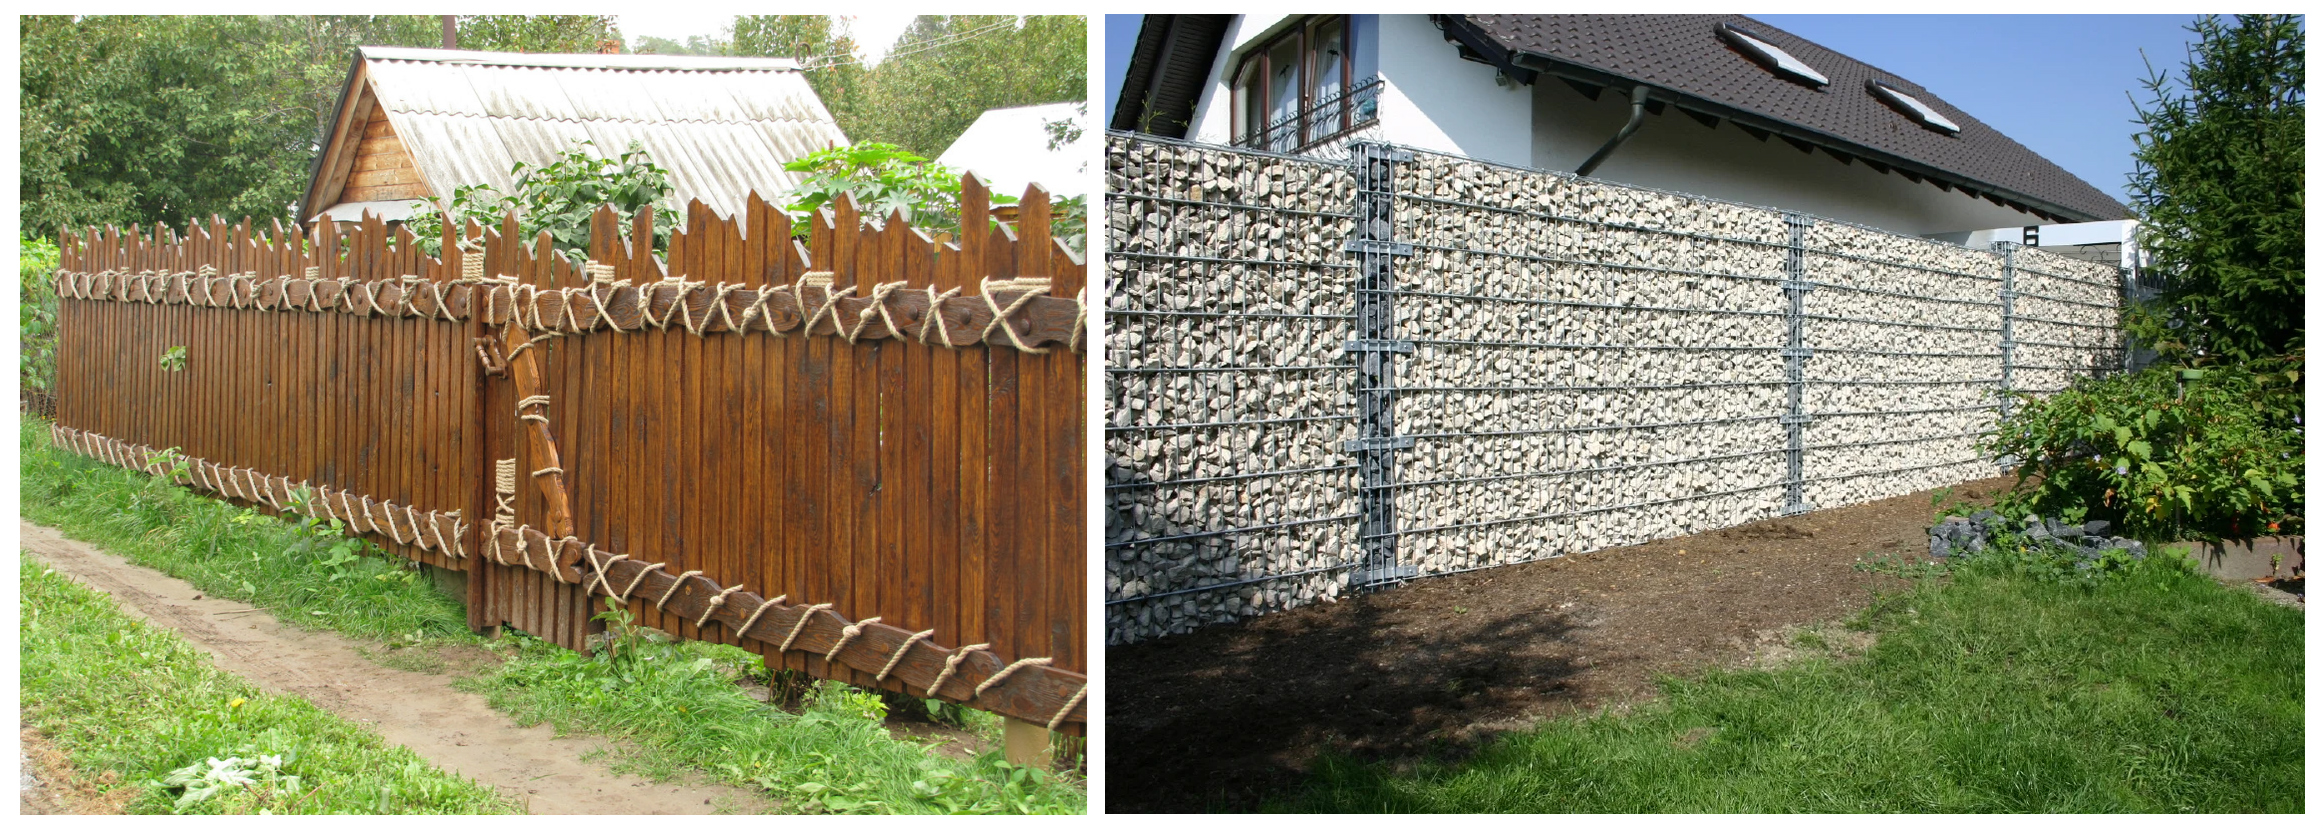 Забор из дерева и ограждение с использованием щебня и сетки - фото